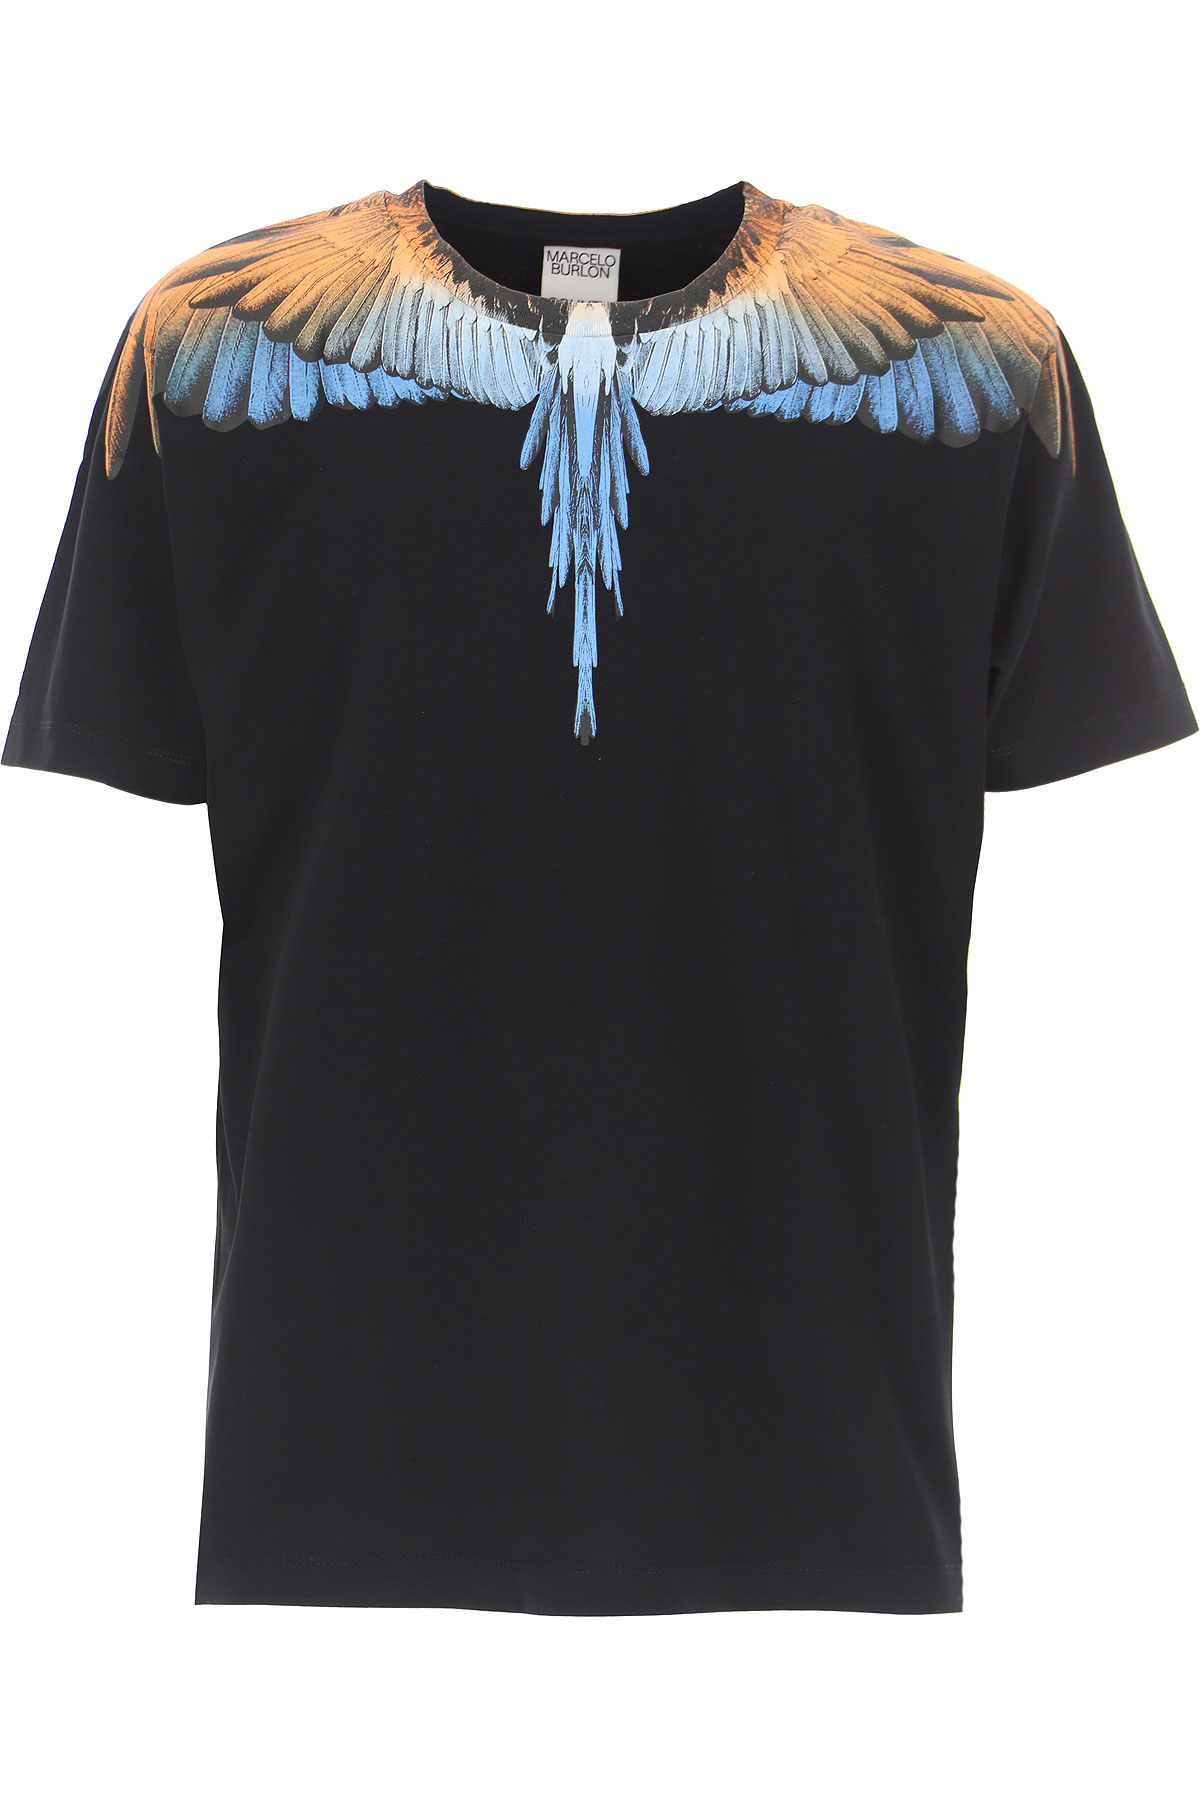 Marcelo Burlon T-Shirt for Men On Sale, Black, Cotton, 2021, L M S XL XXL  from Marcelo Burlon | AccuWeather Shop